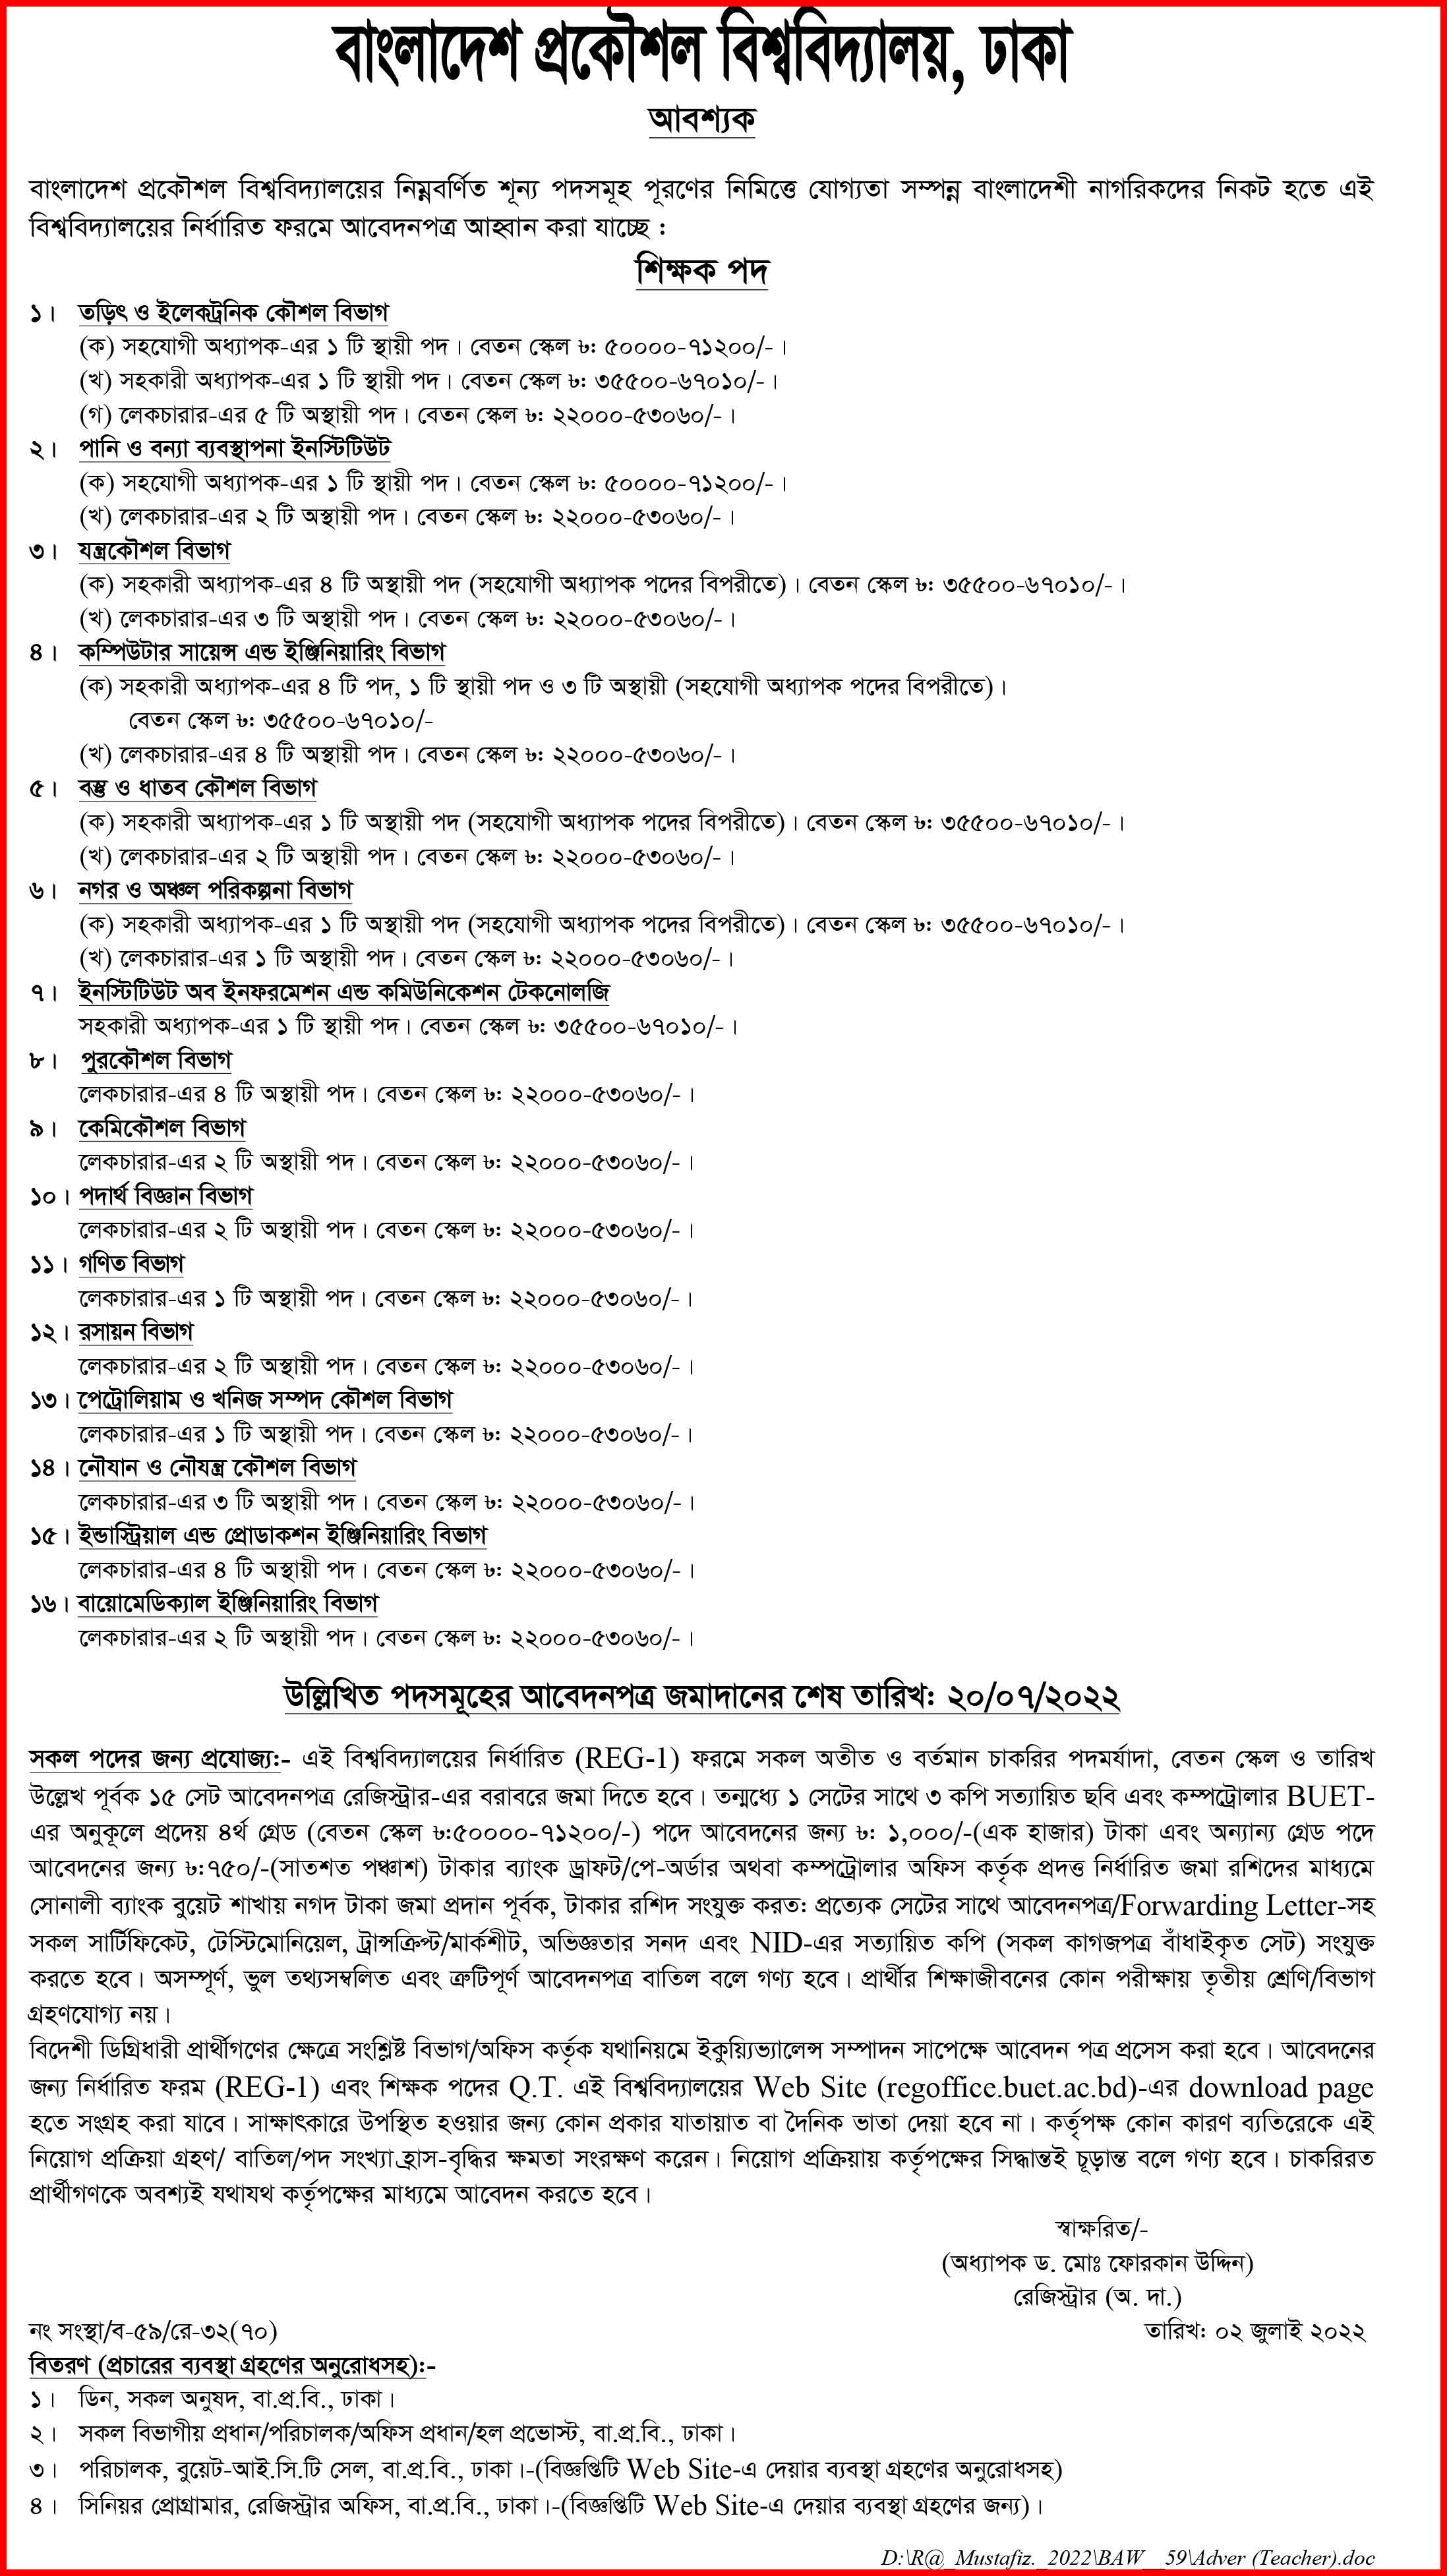 ৫২ পদে বাংলাদেশ প্রকৌশল বিশ্ববিদ্যালয় (বুয়েট) এ  নতুন নিয়োগ বিজ্ঞপ্তি প্রকাশ ।  Publication of new recruitment notification for 52 posts in Bangladesh University of Engineering (BUET).